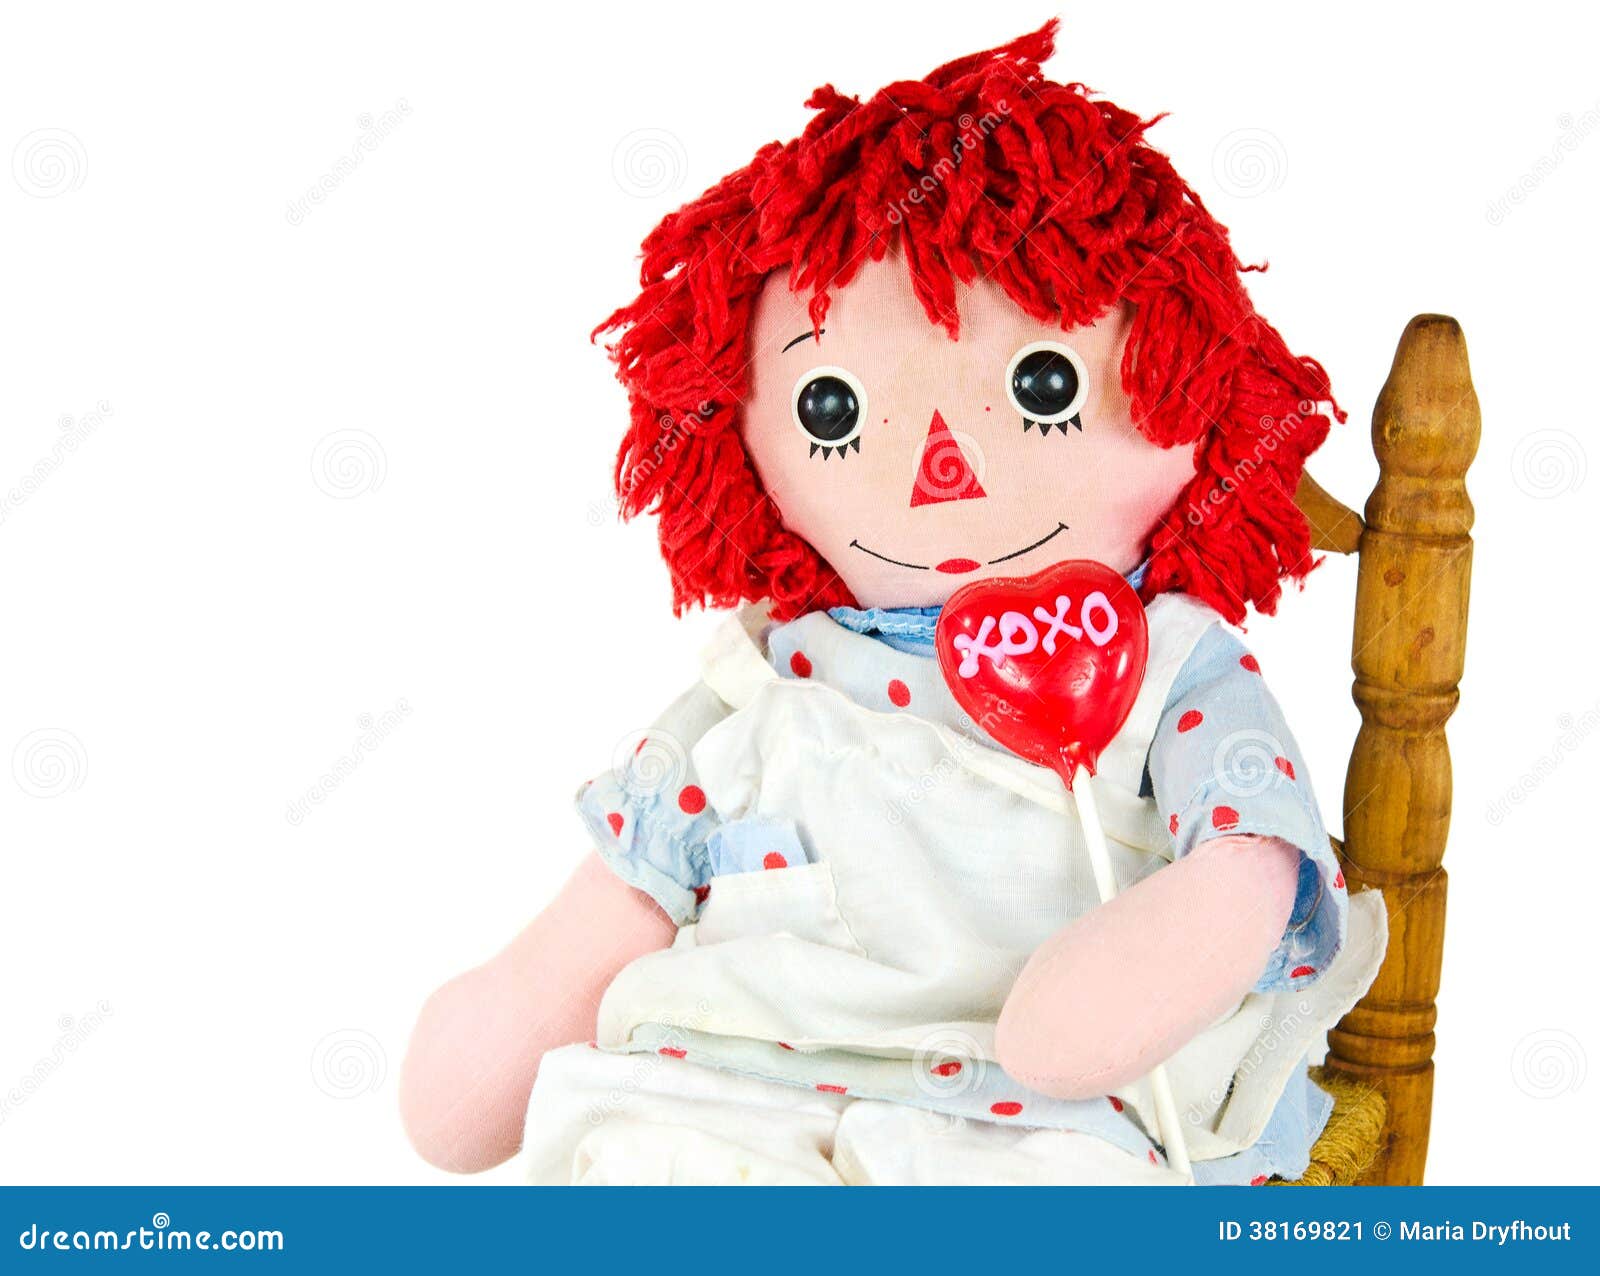 Игра тряпичная кукла 2. Красная кукла тряпичная Старая. Тряпичная кукла Рэггеди Энн.. Стул для куклы. Пупс с леденцом.